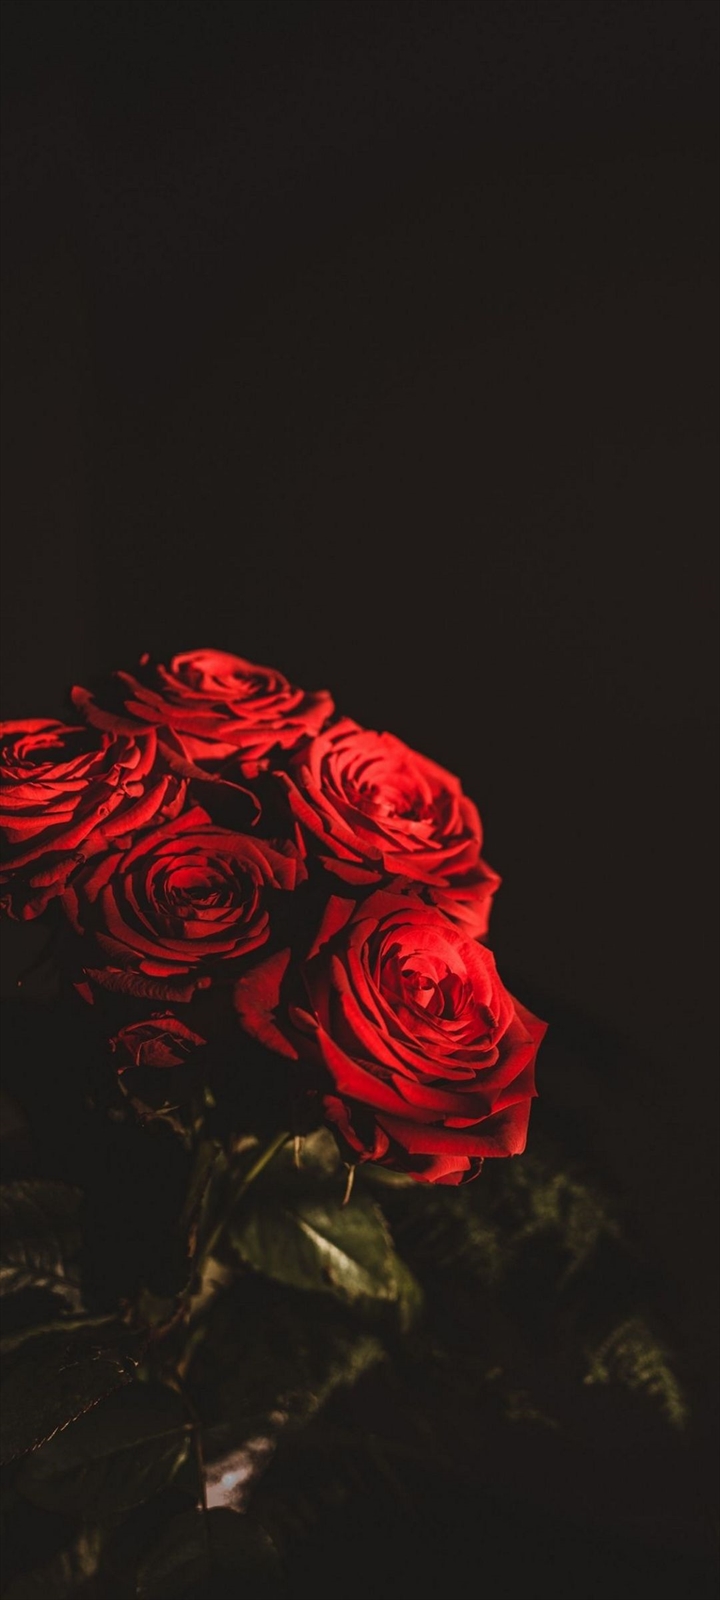 綺麗な赤い薔薇の束 Galaxy A32 5g 壁紙 待ち受け スマラン